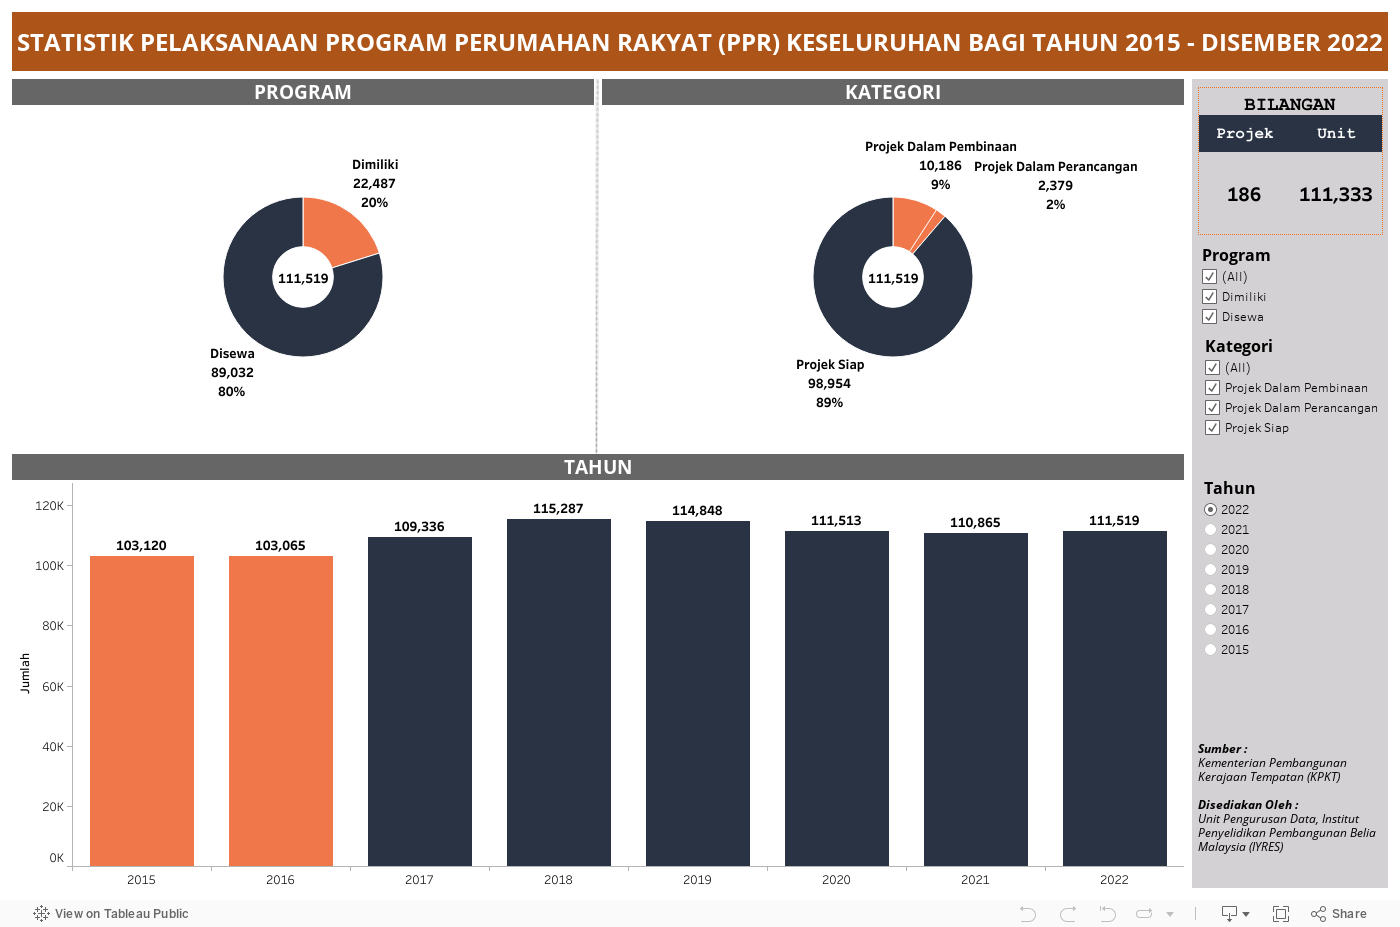 STATISTIK PELAKSANAAN PROGRAM PERUMAHAN RAKYAT (PPR) KESELURUHAN BAGI TAHUN 2015 - DISEMBER 2022 